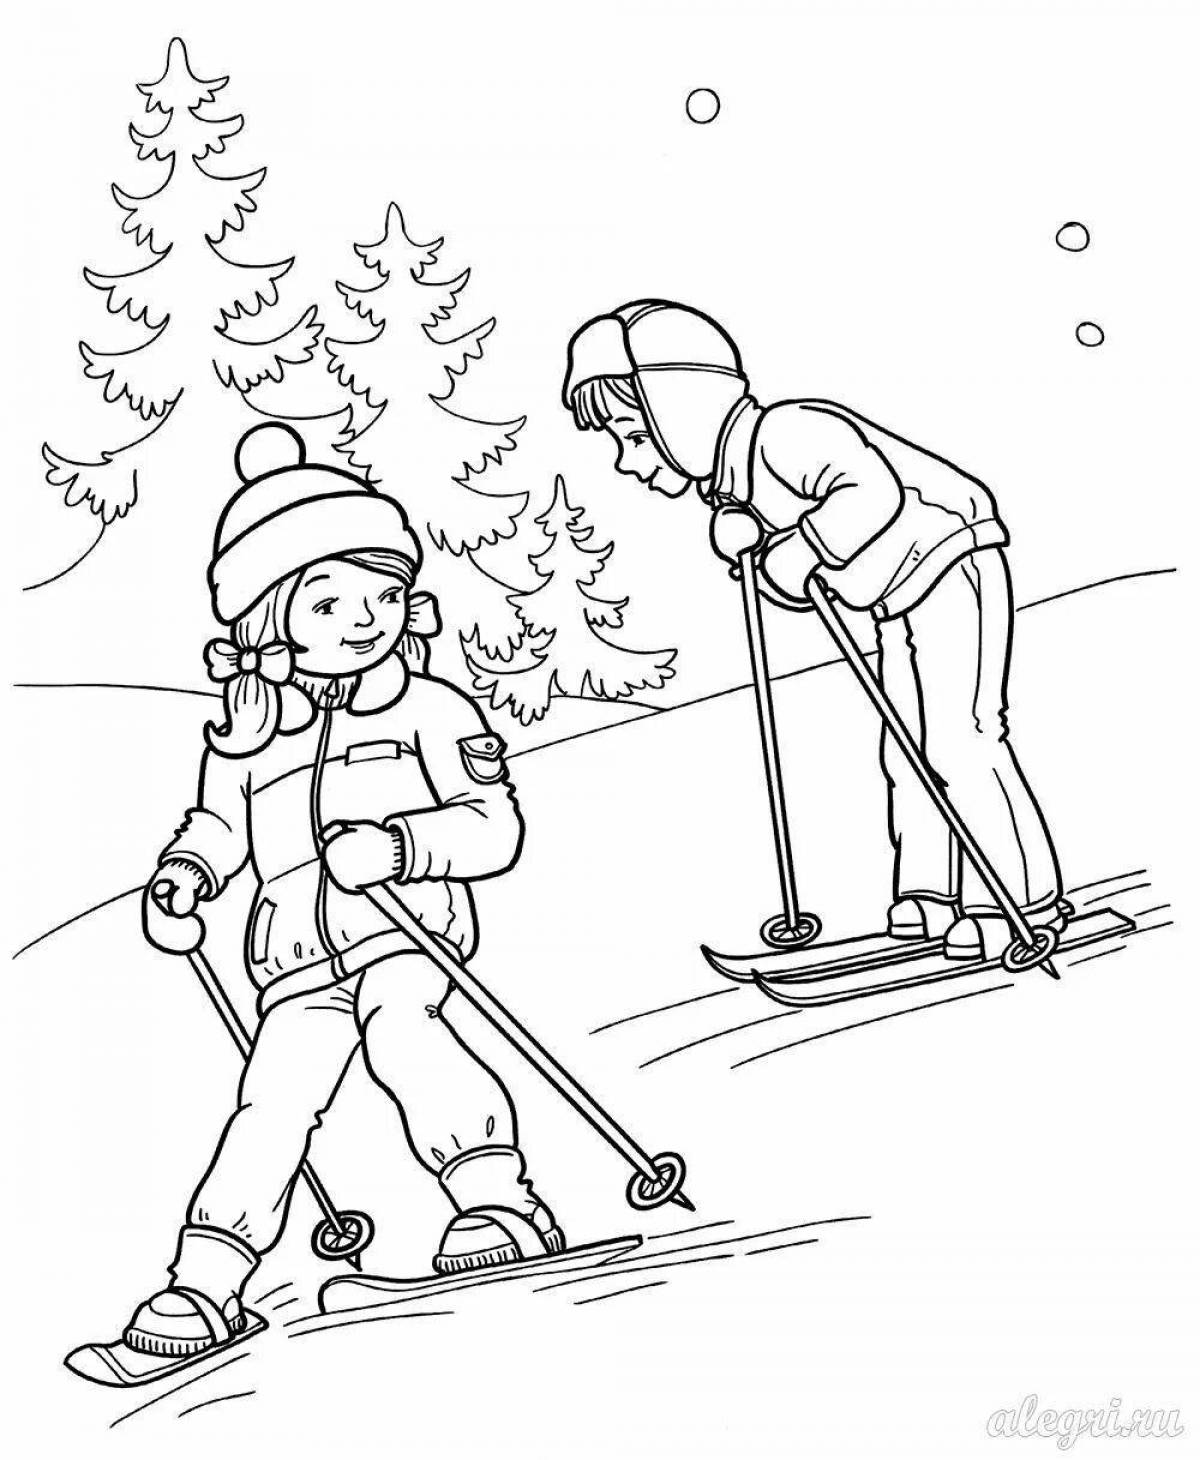 Children skiing in winter #12